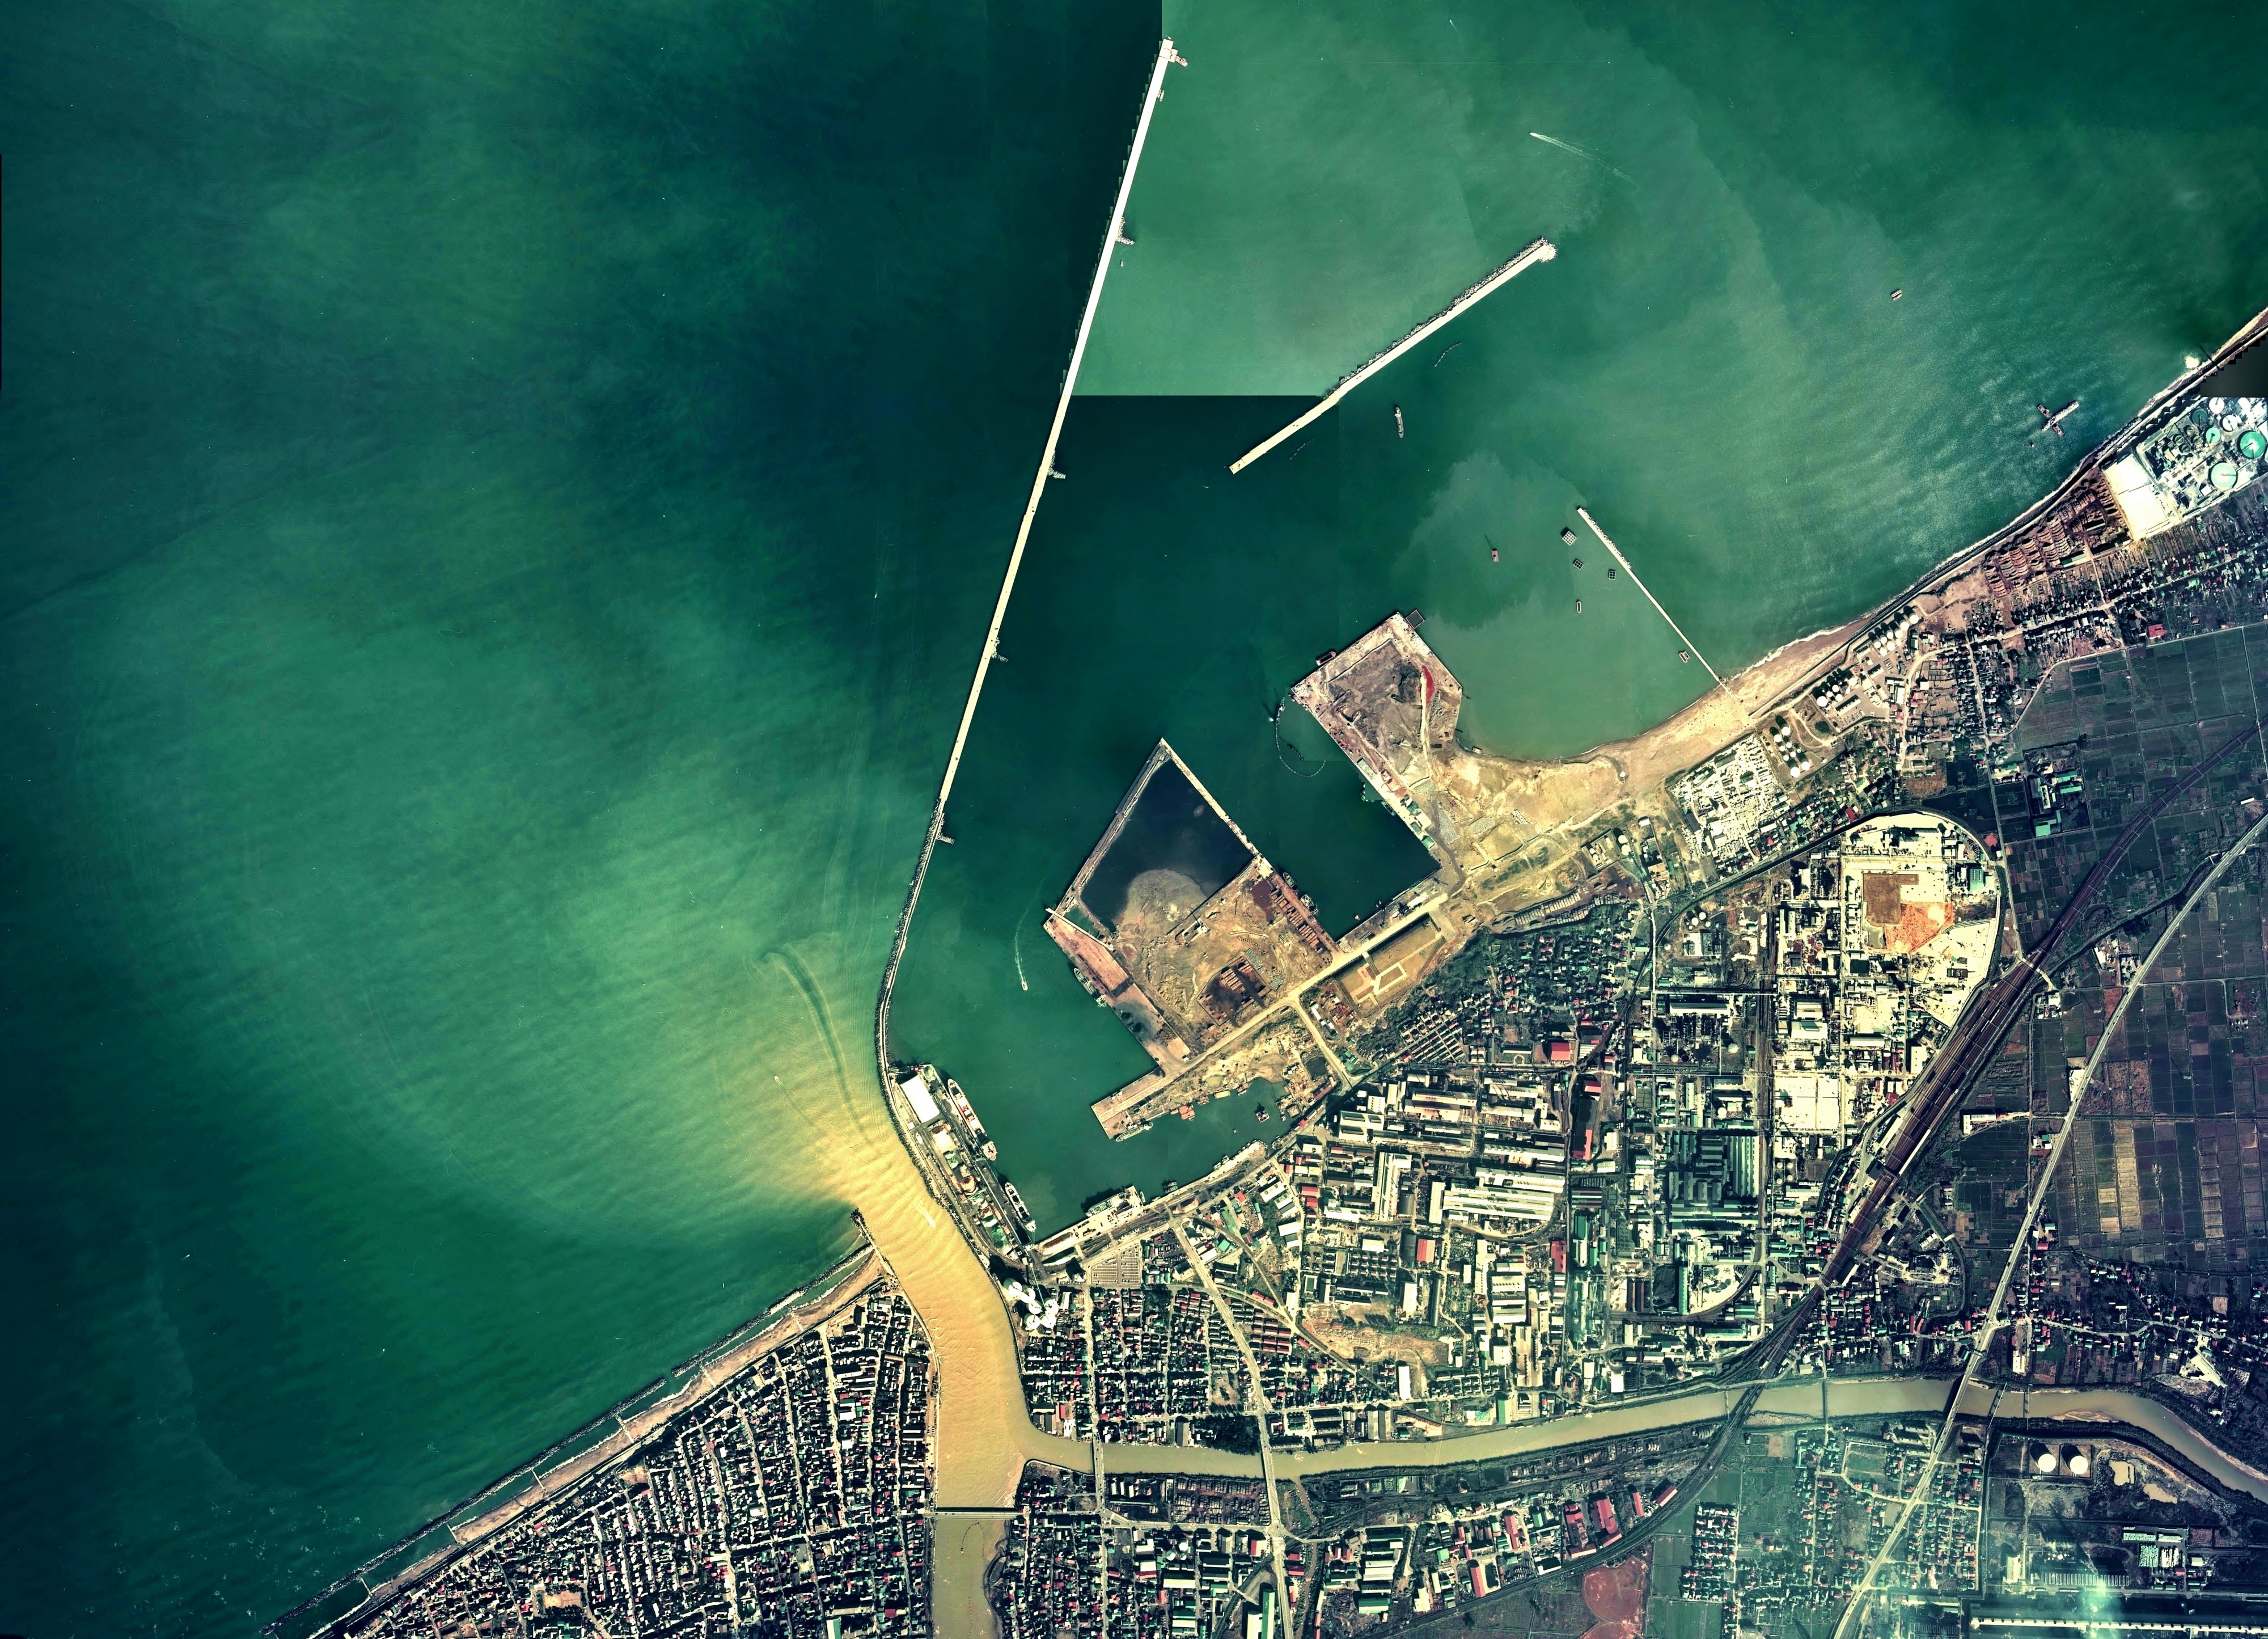 Port of Naoetsu Aerial photograph.1975